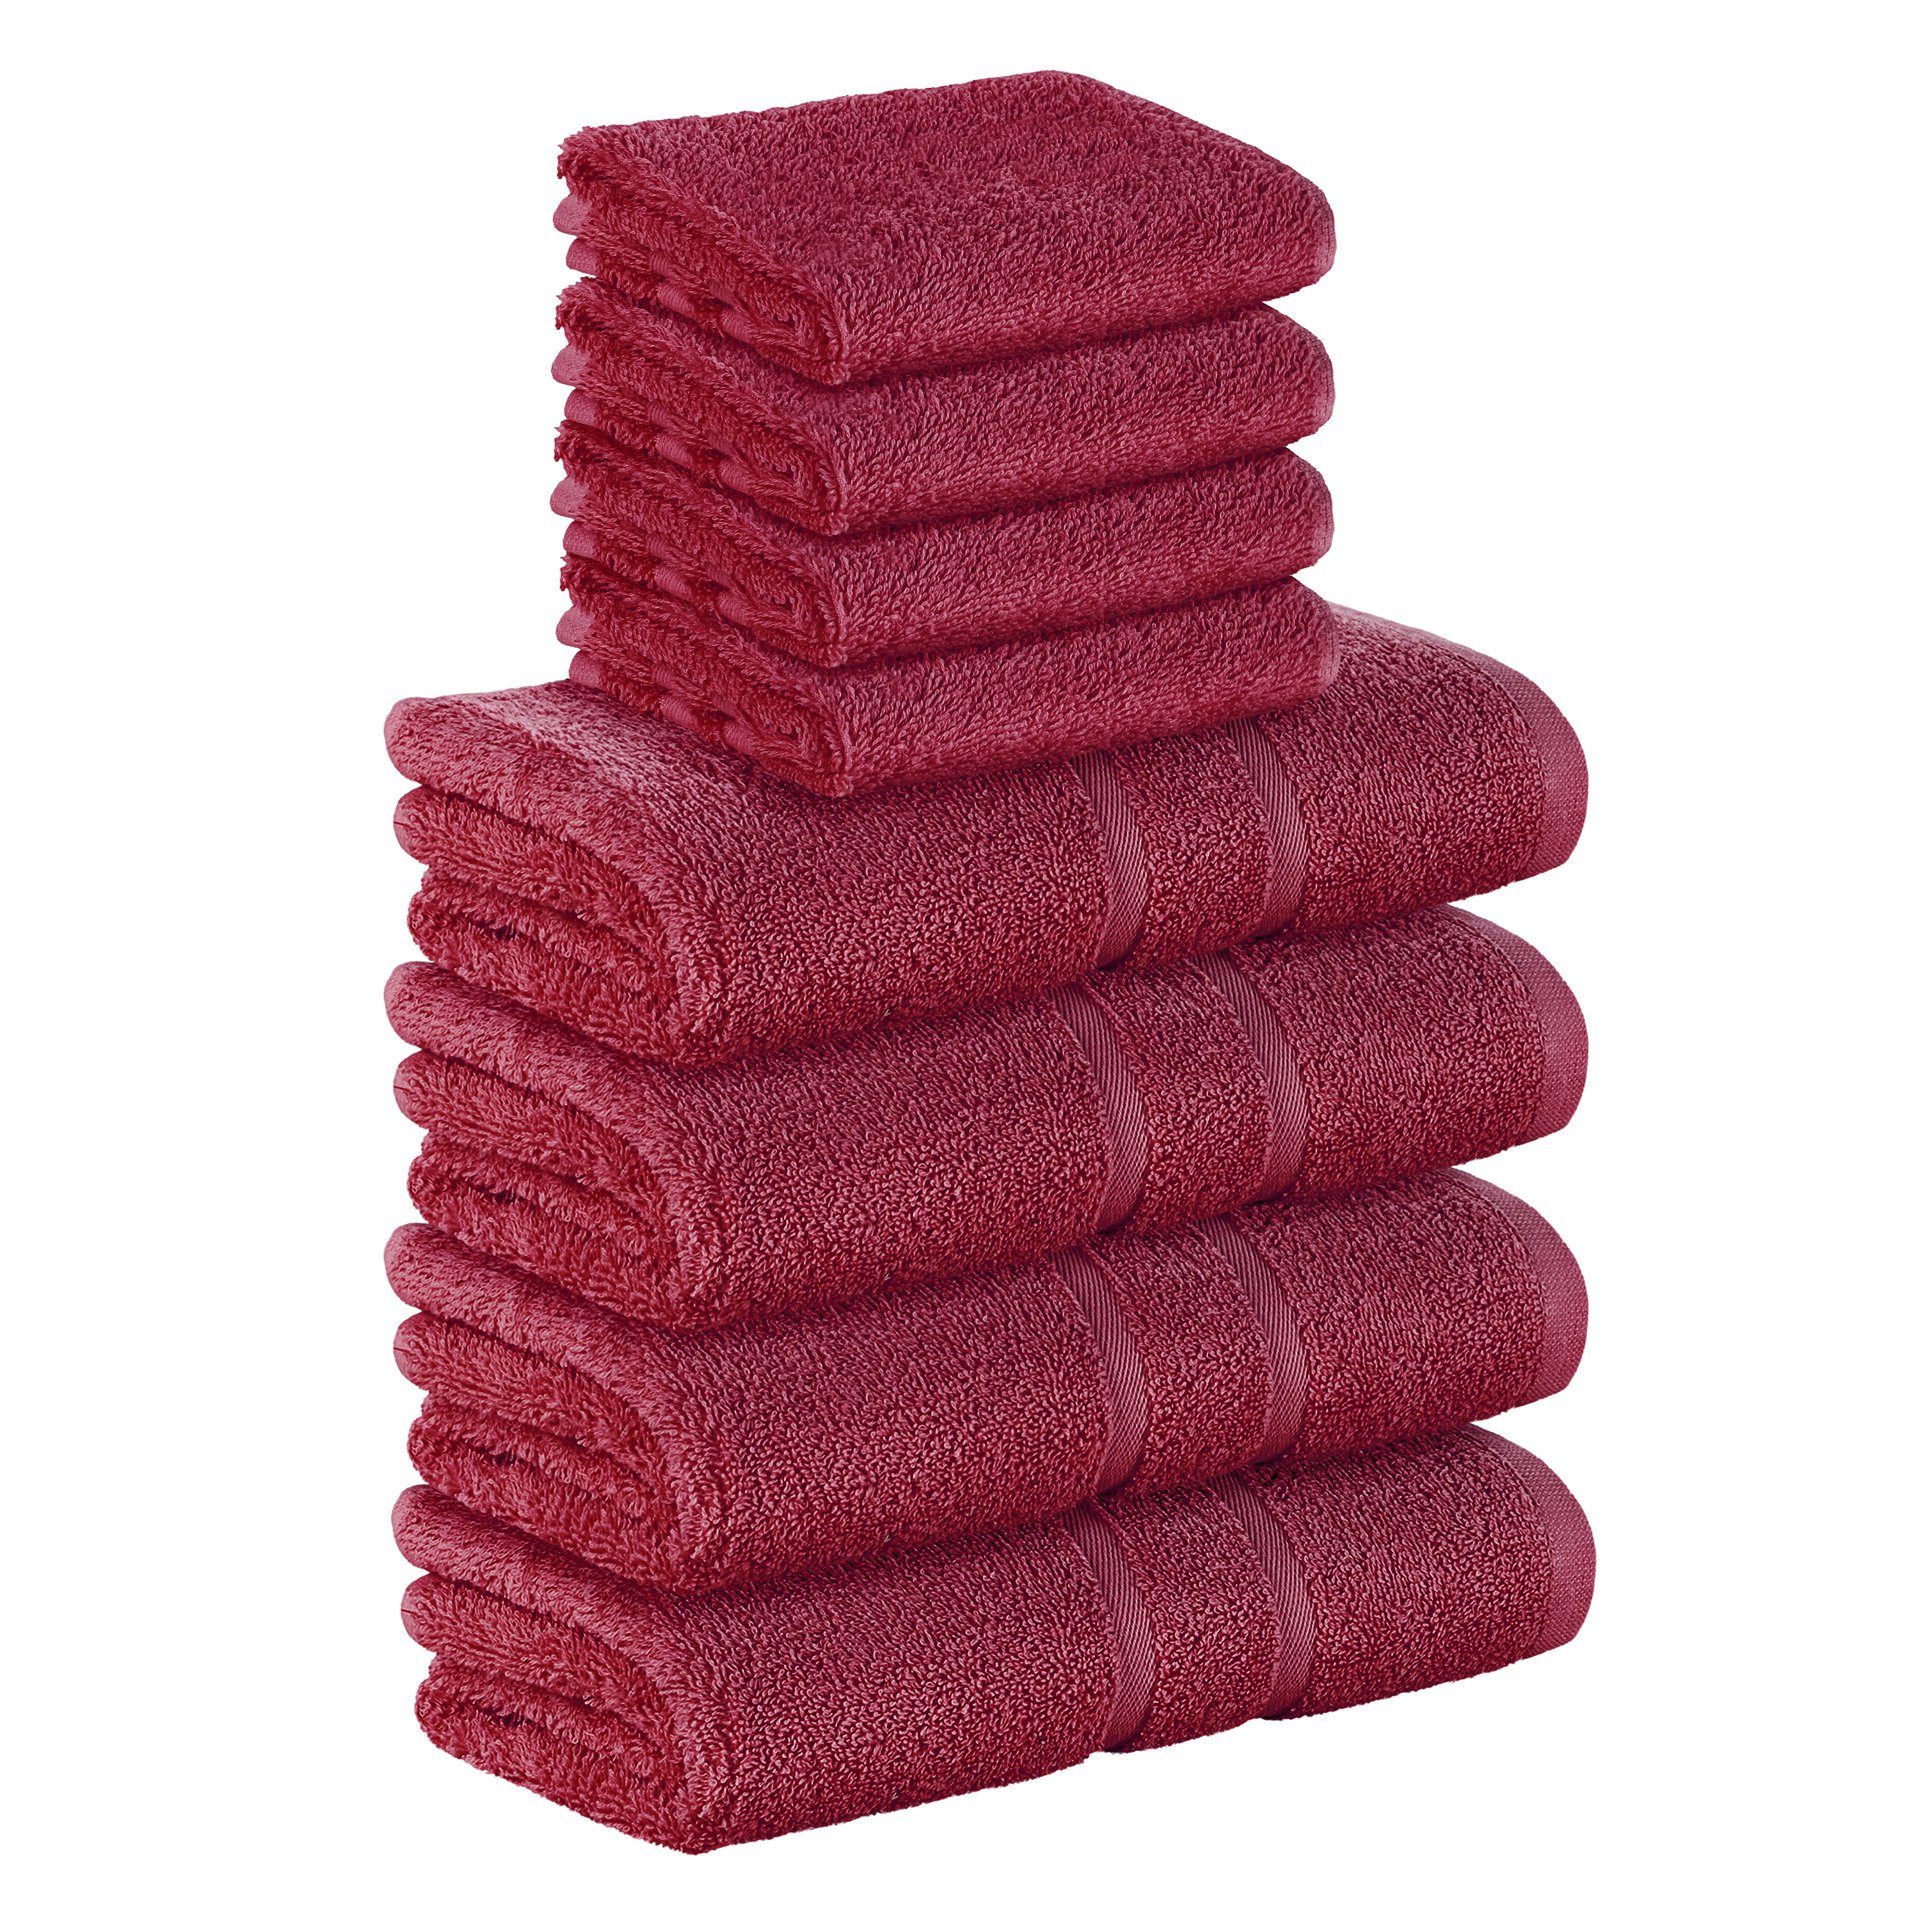 StickandShine Handtuch Set 4x Gästehandtuch 4x Handtücher als SET in verschiedenen Farben (8 Teilig) 100% Baumwolle 500 GSM Frottee 8er Handtuch Pack, 100% Baumwolle 500 GSM Bordeaux